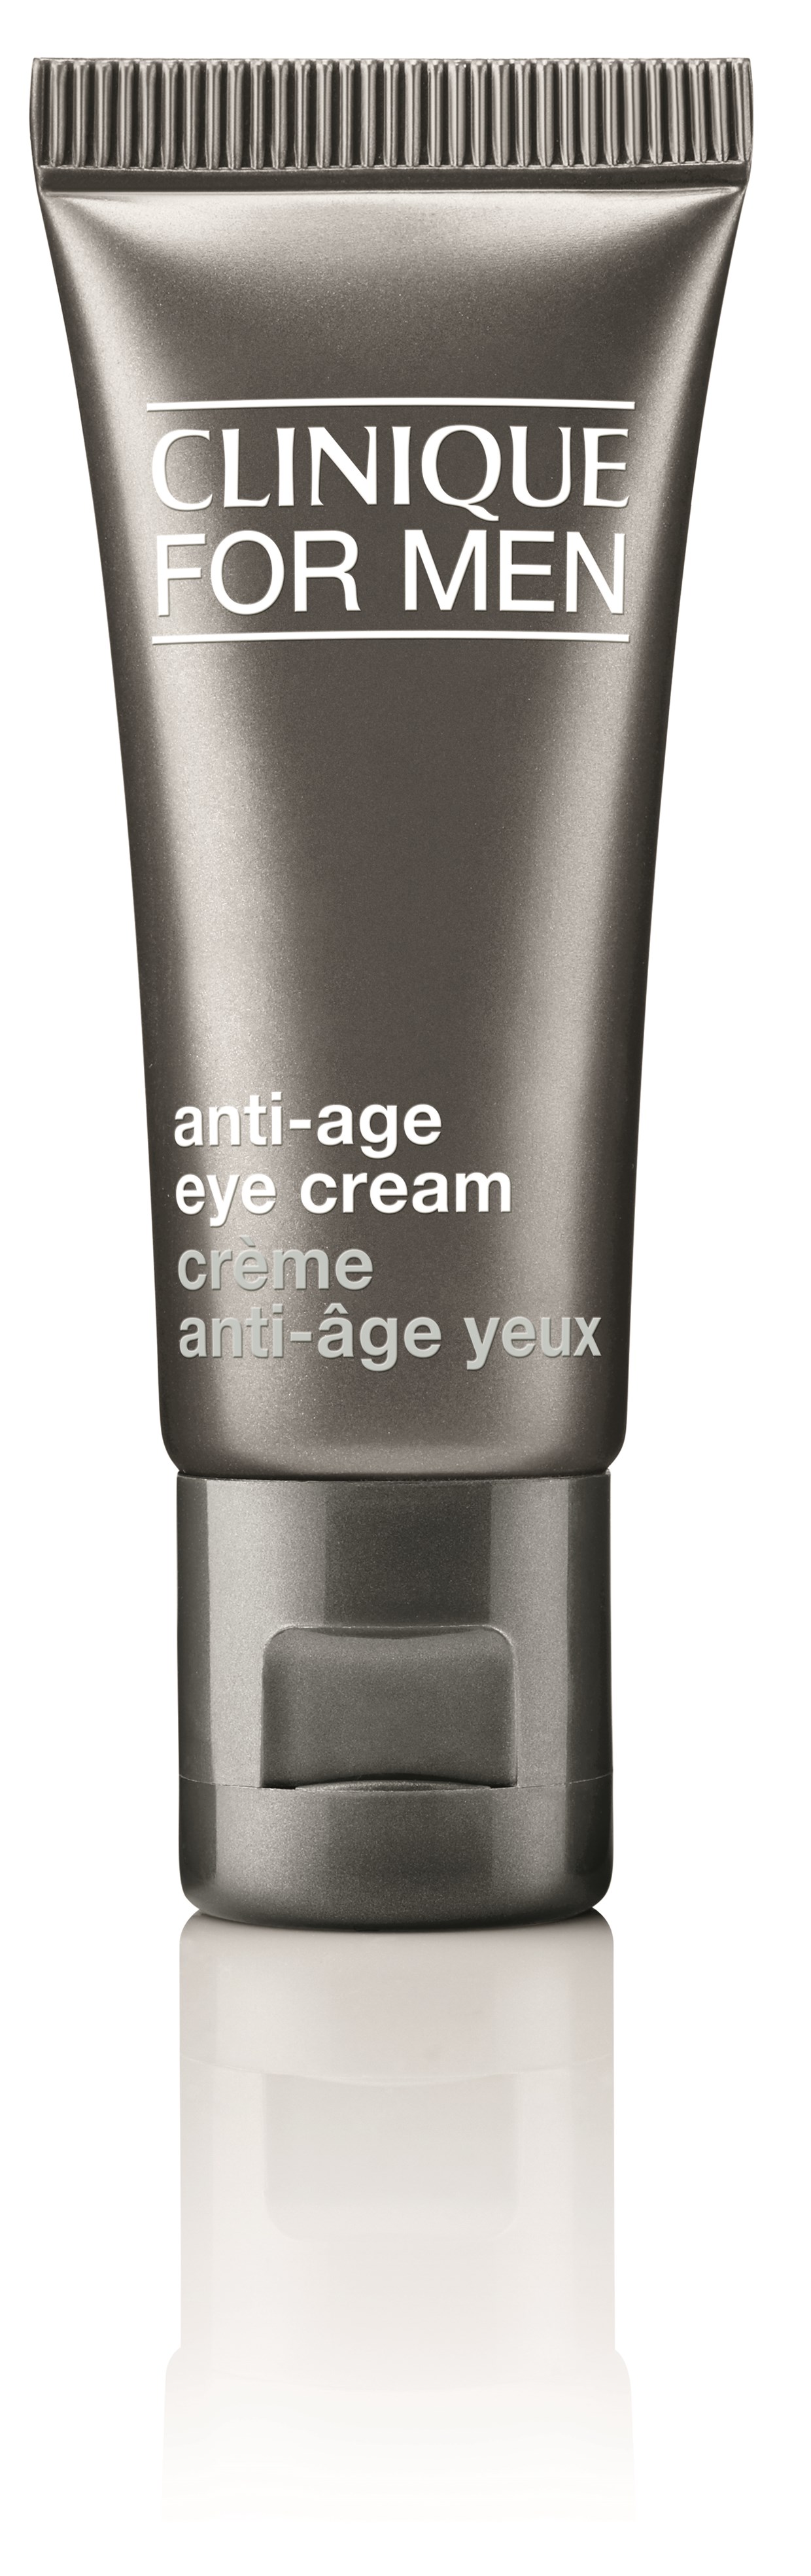 item Arthur compileren Clinique For Men Anti-Age oogcrème - 15ml kopen | Beauty Plaza